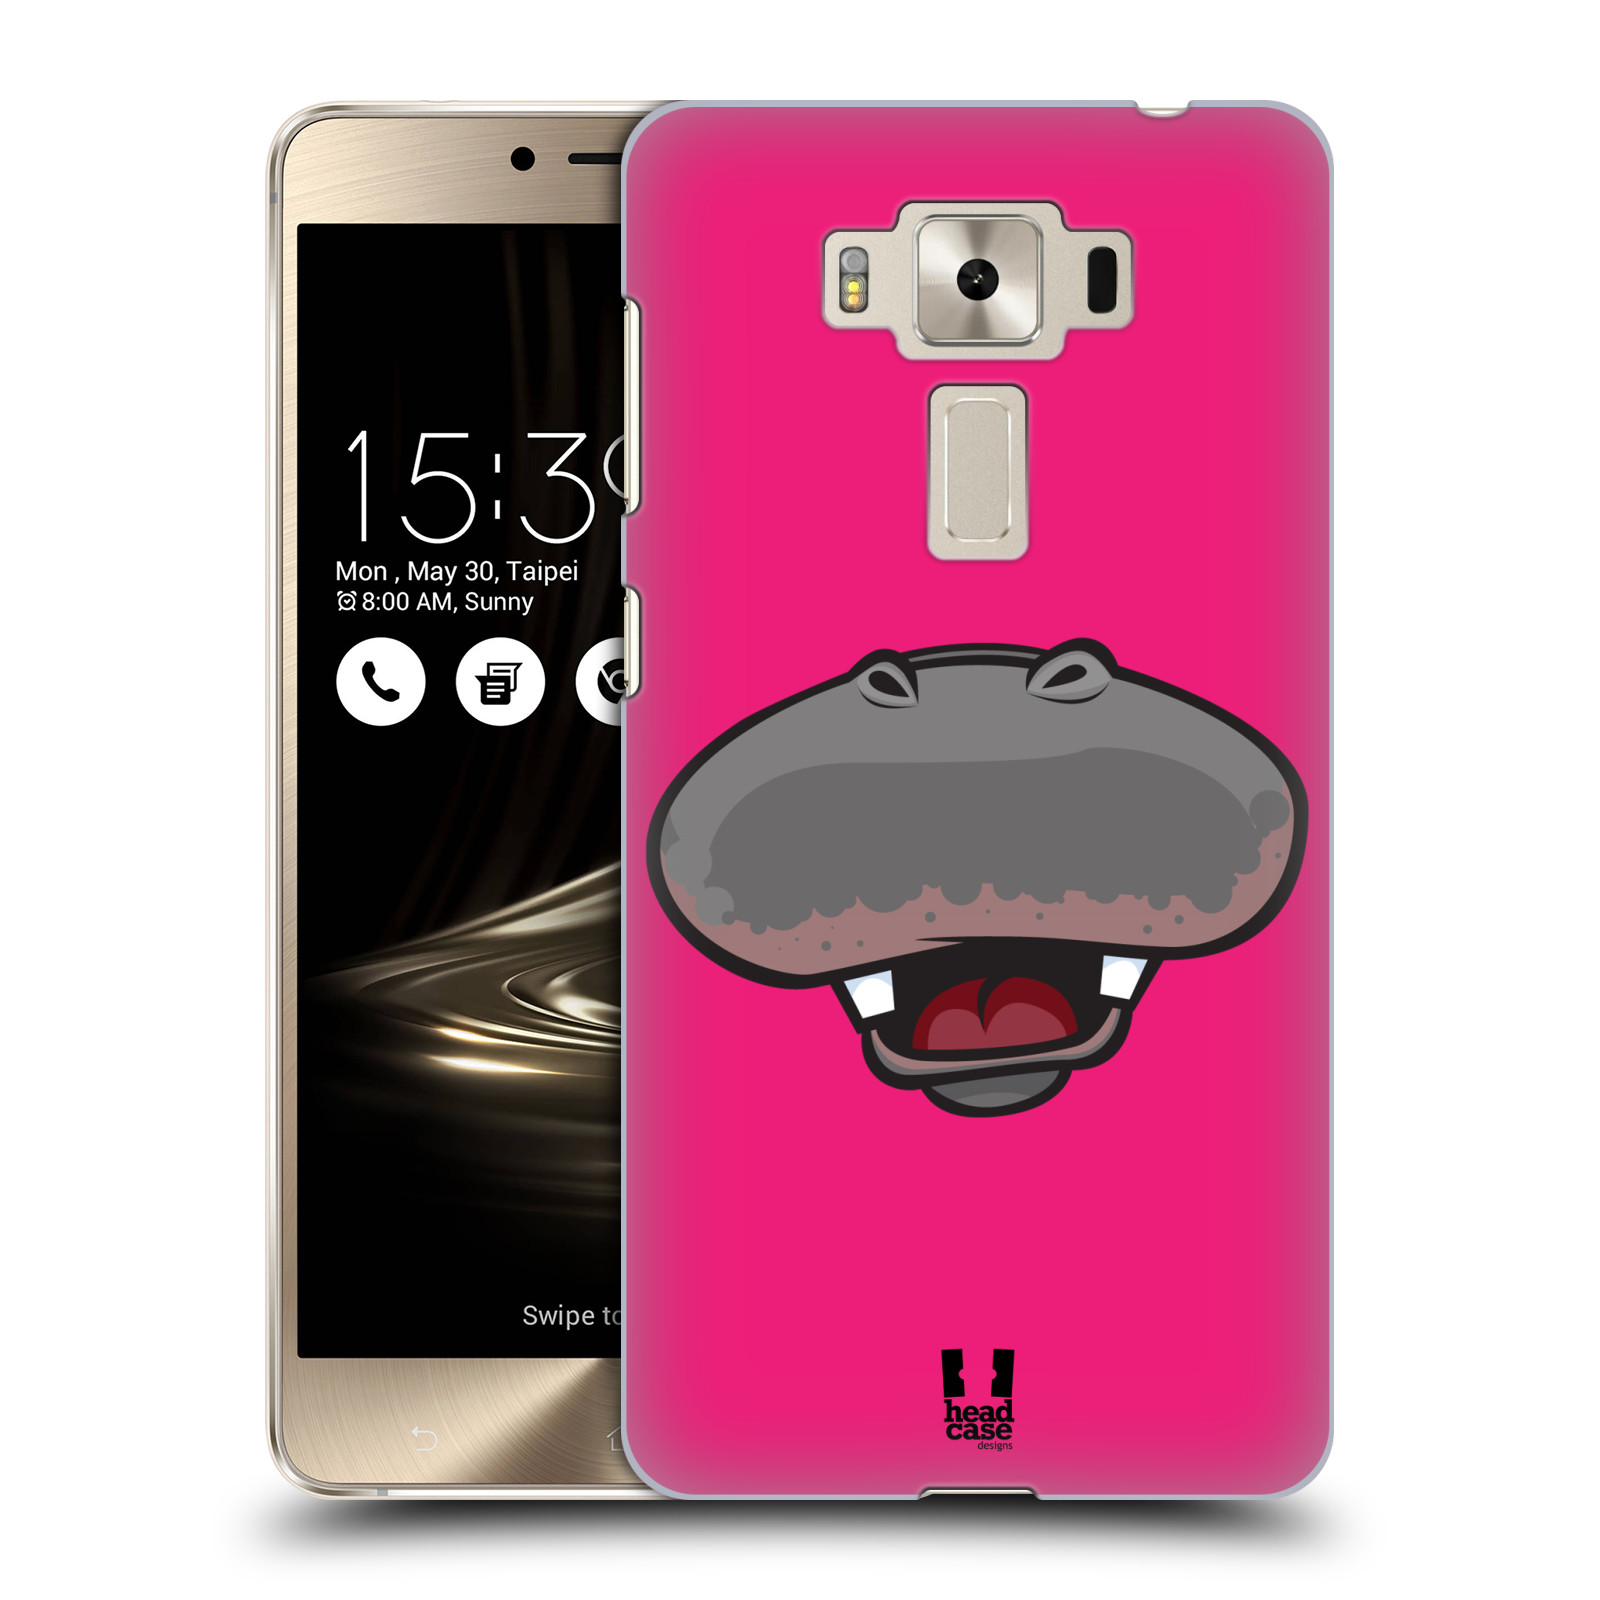 HEAD CASE plastový obal na mobil Asus Zenfone 3 DELUXE ZS550KL vzor Zvířecí úsměv hroch růžová